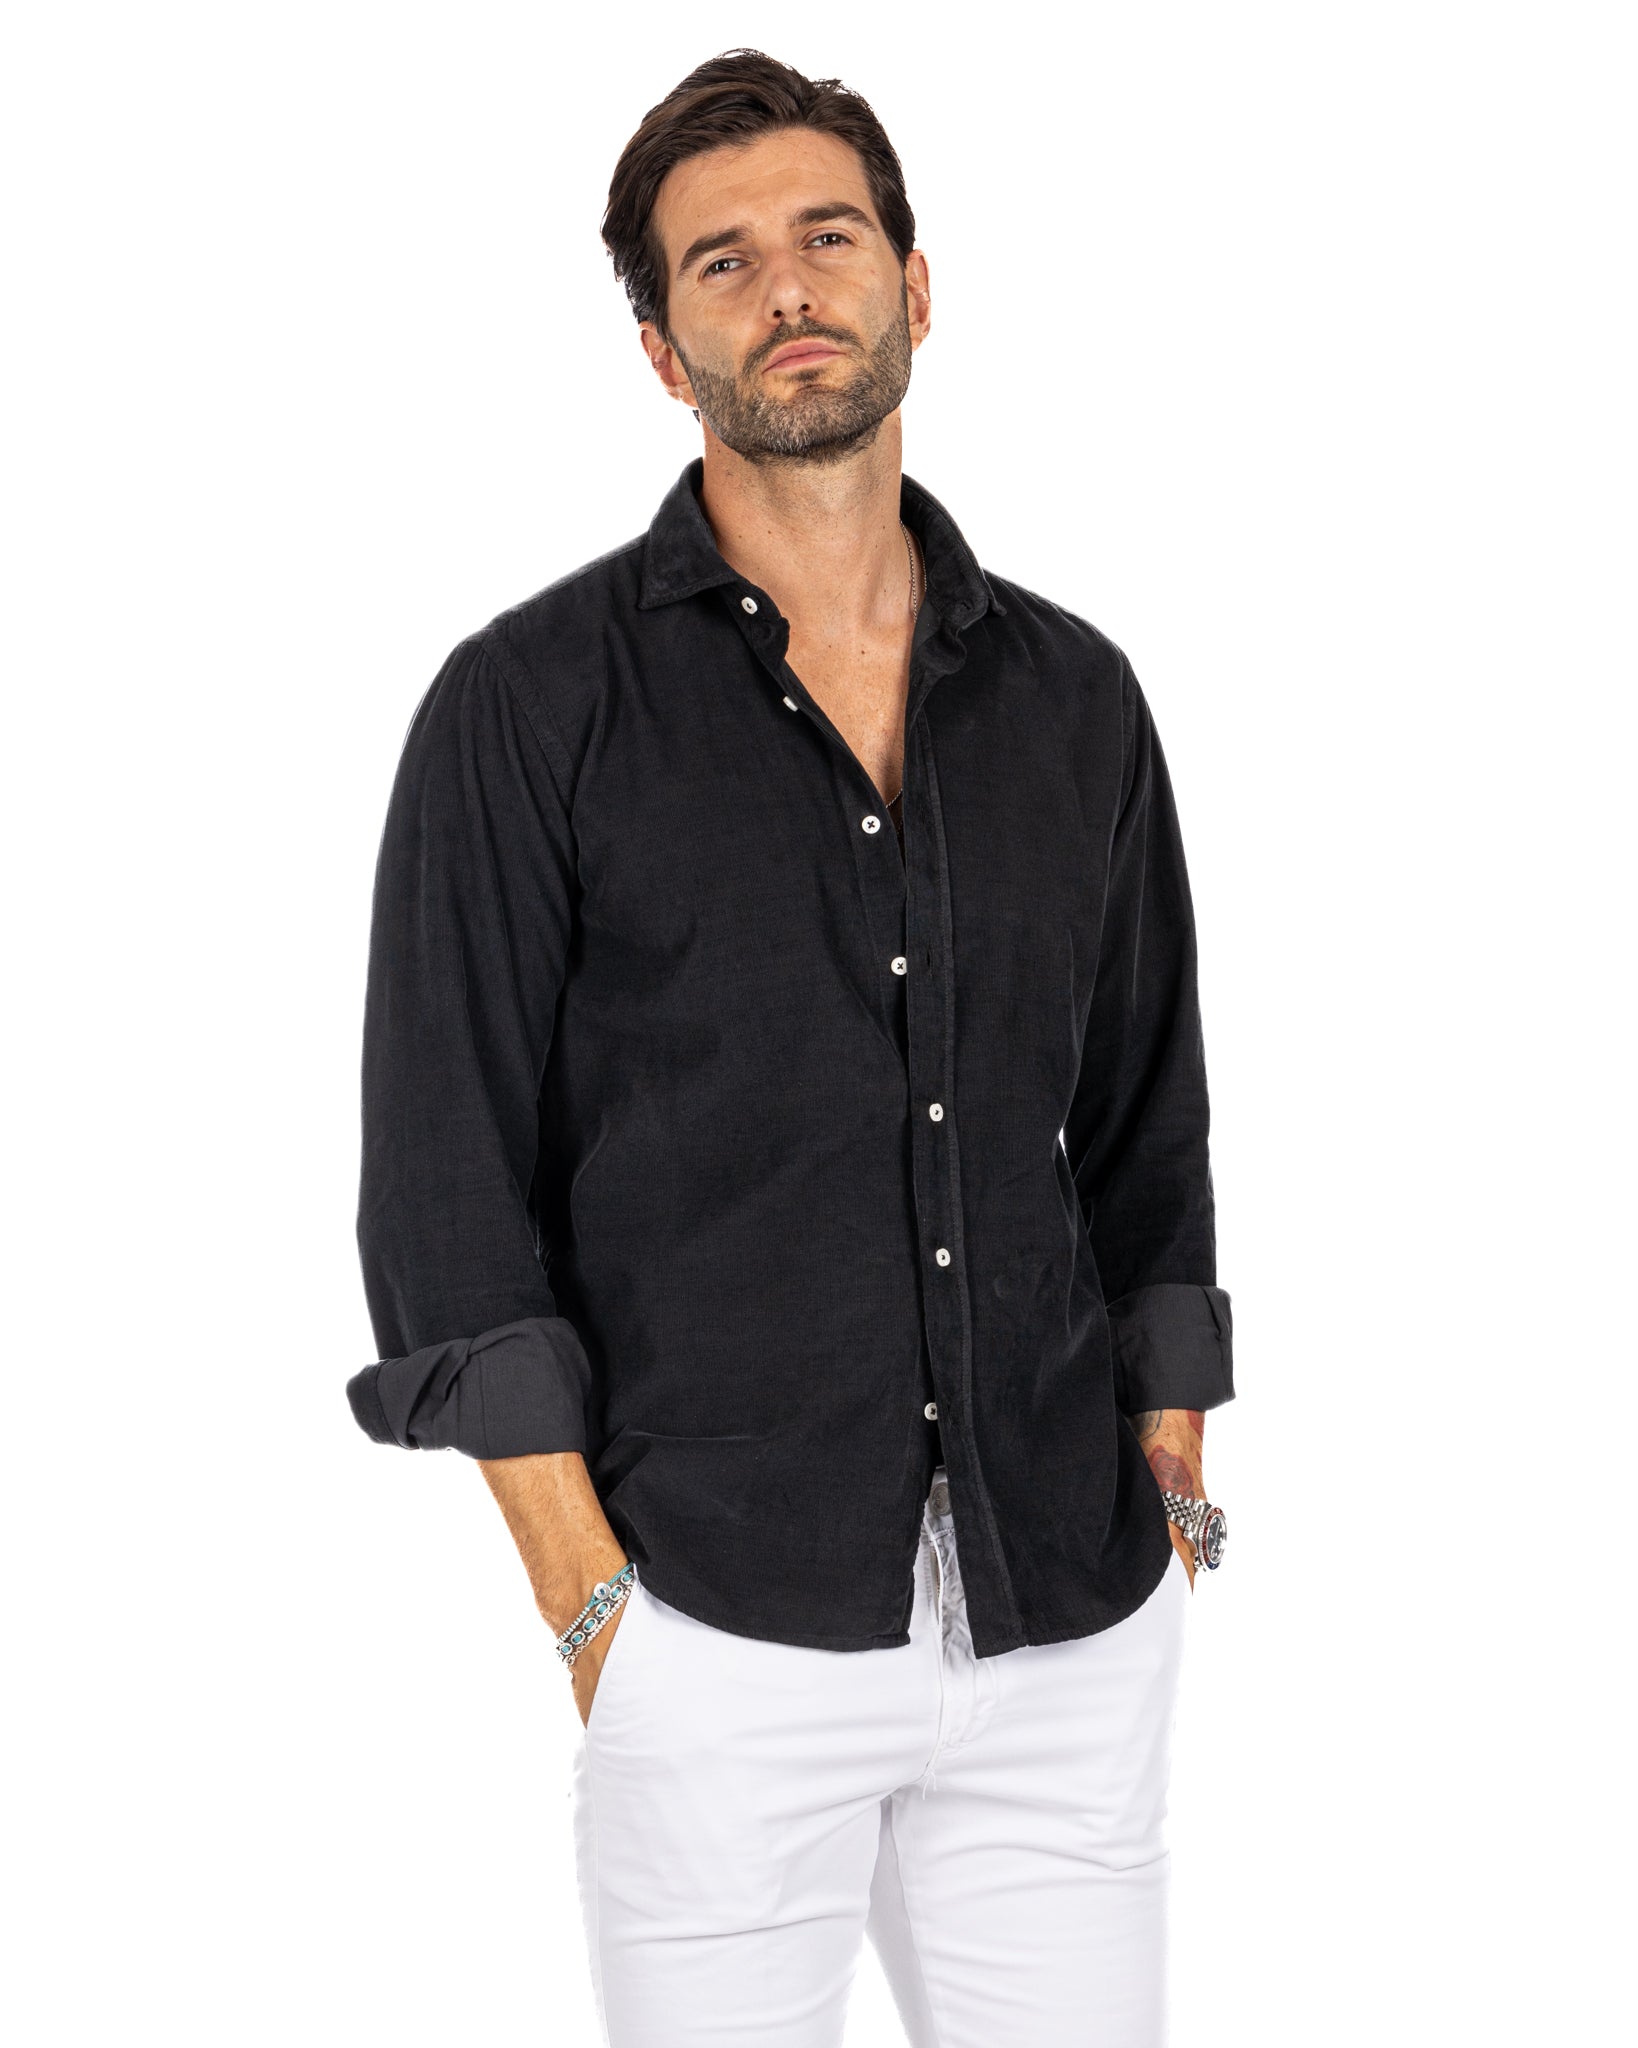 Vega - chemise en velours rayé noir